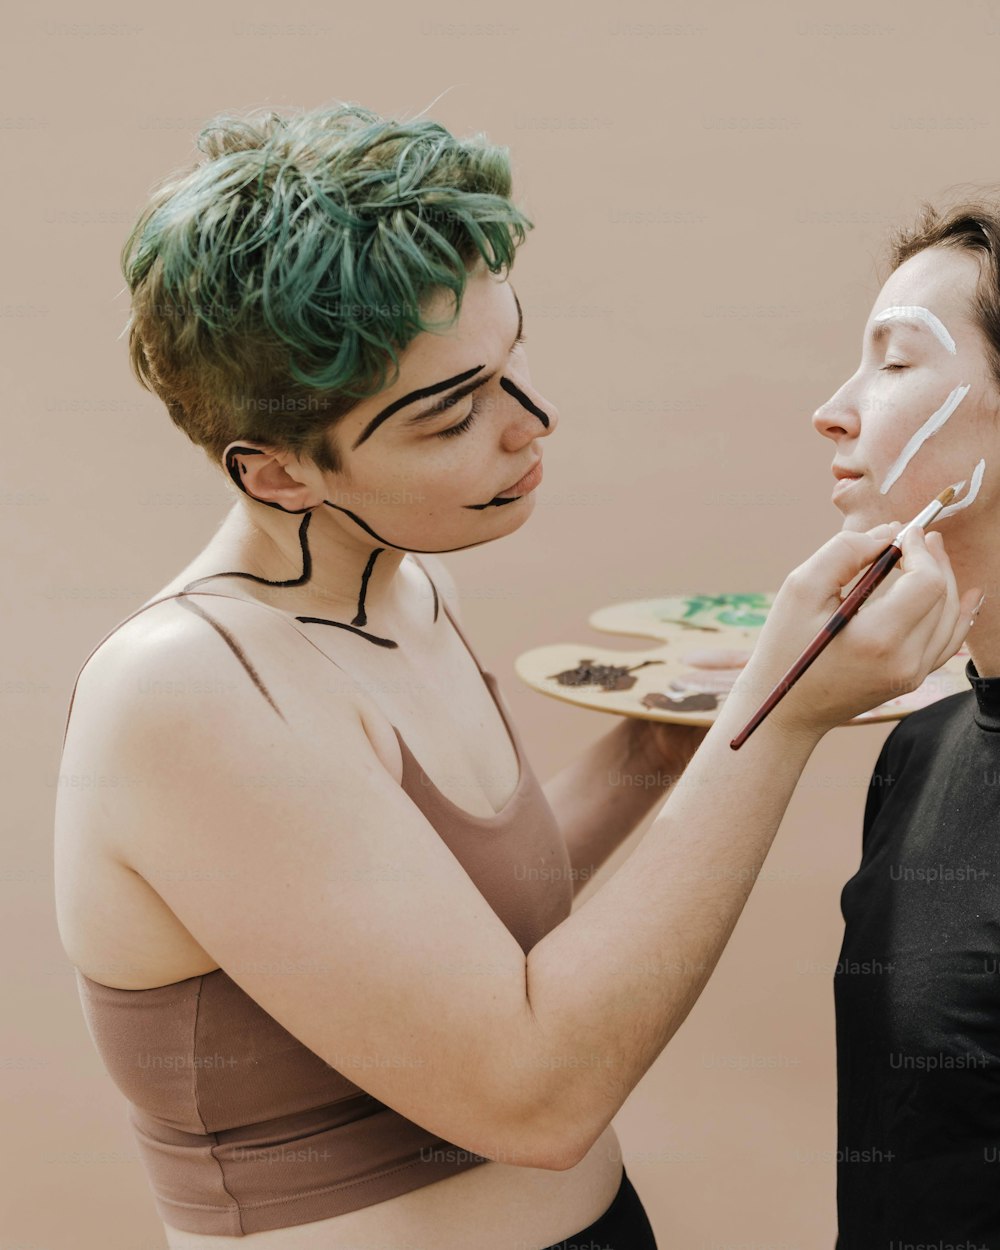 緑の髪の女性が別の女性の顔を描いている